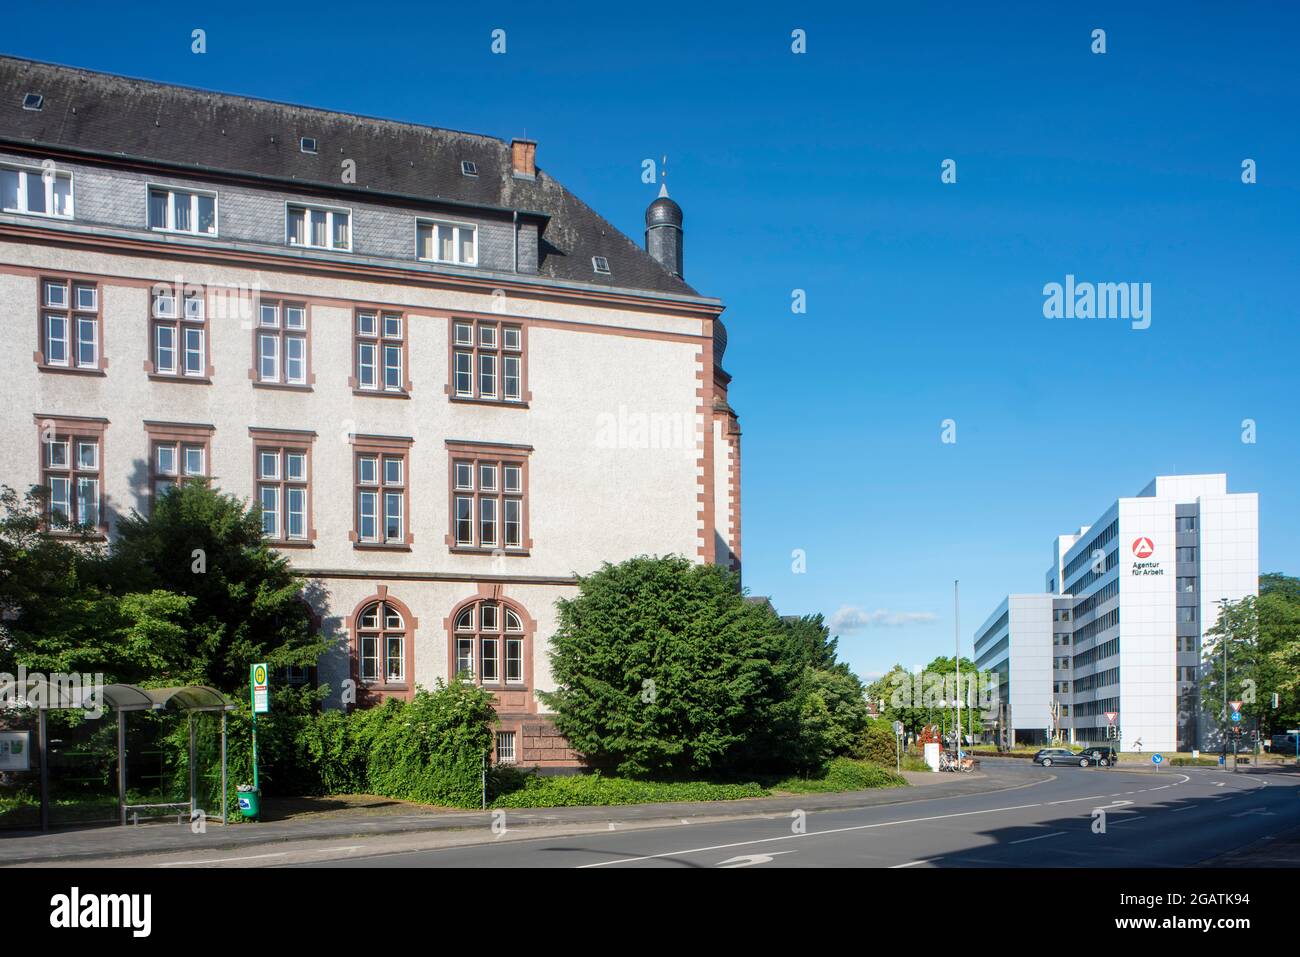 Deutschland, Nordrhein-Westfalen, Hamm, Agentur für Arbeit Stock Photo -  Alamy